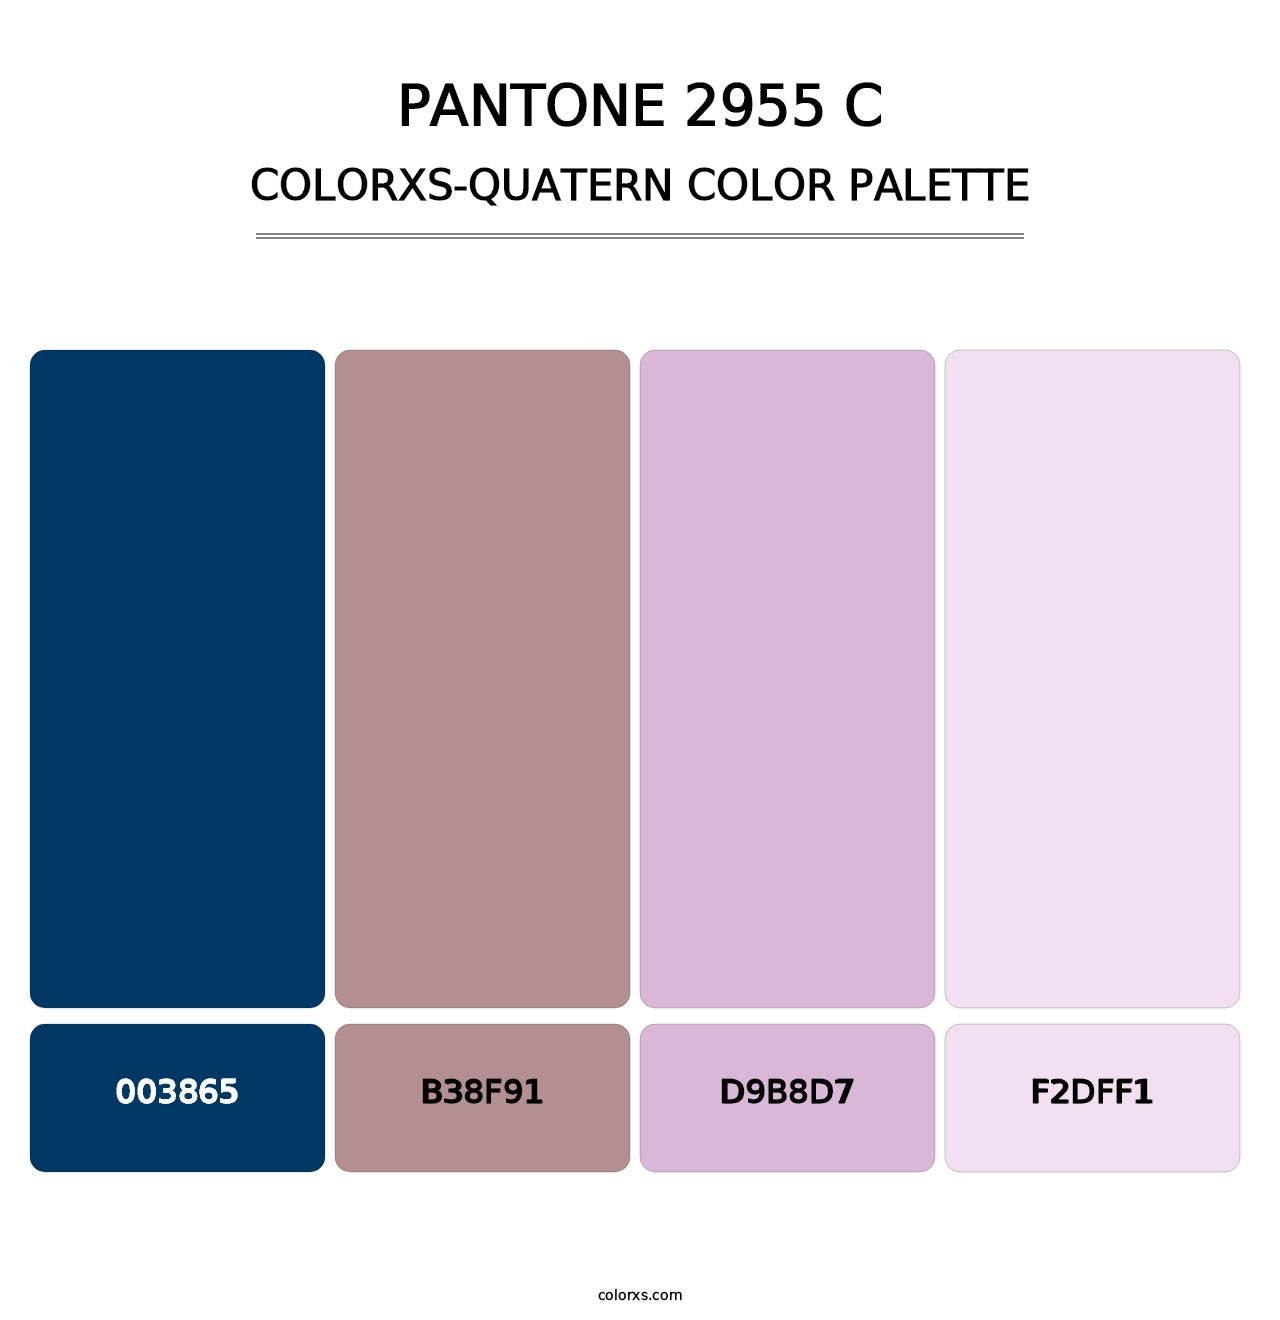 PANTONE 2955 C - Colorxs Quatern Palette